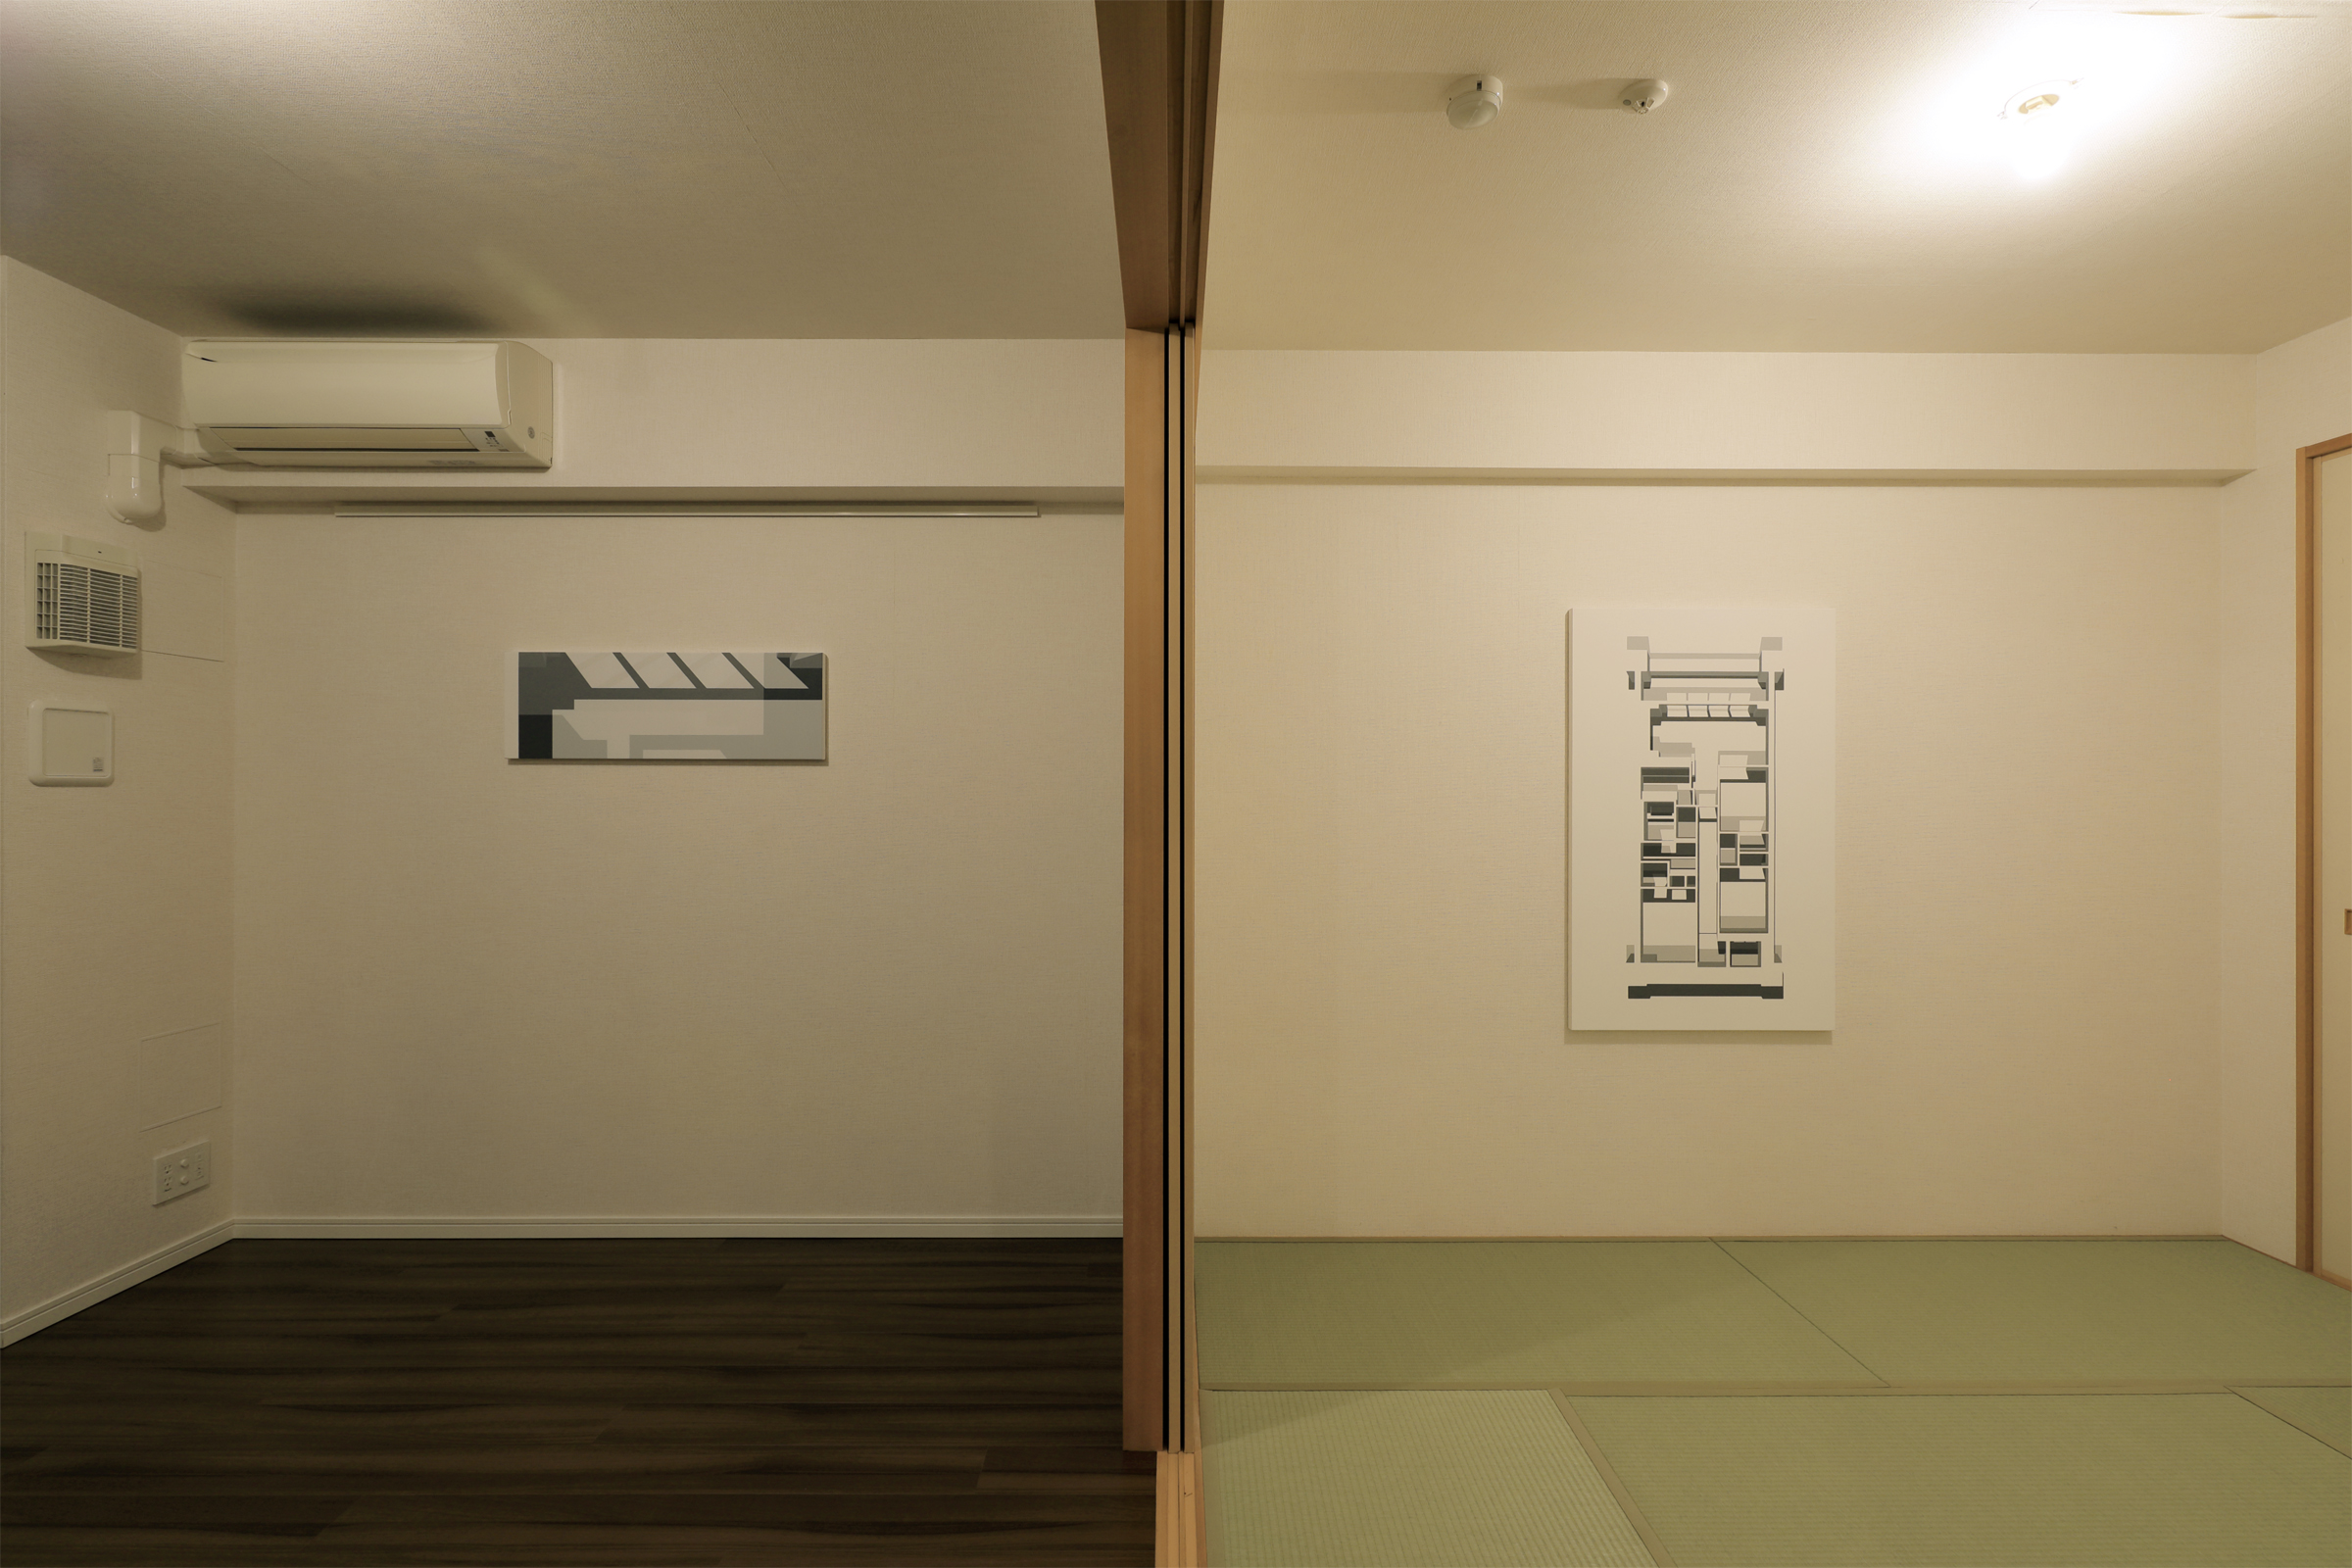 佐々木耕太 ＋ 中尾拓哉　Kota Sasaki ＋ Takuya Nakao/some_or_same/installation view/2019